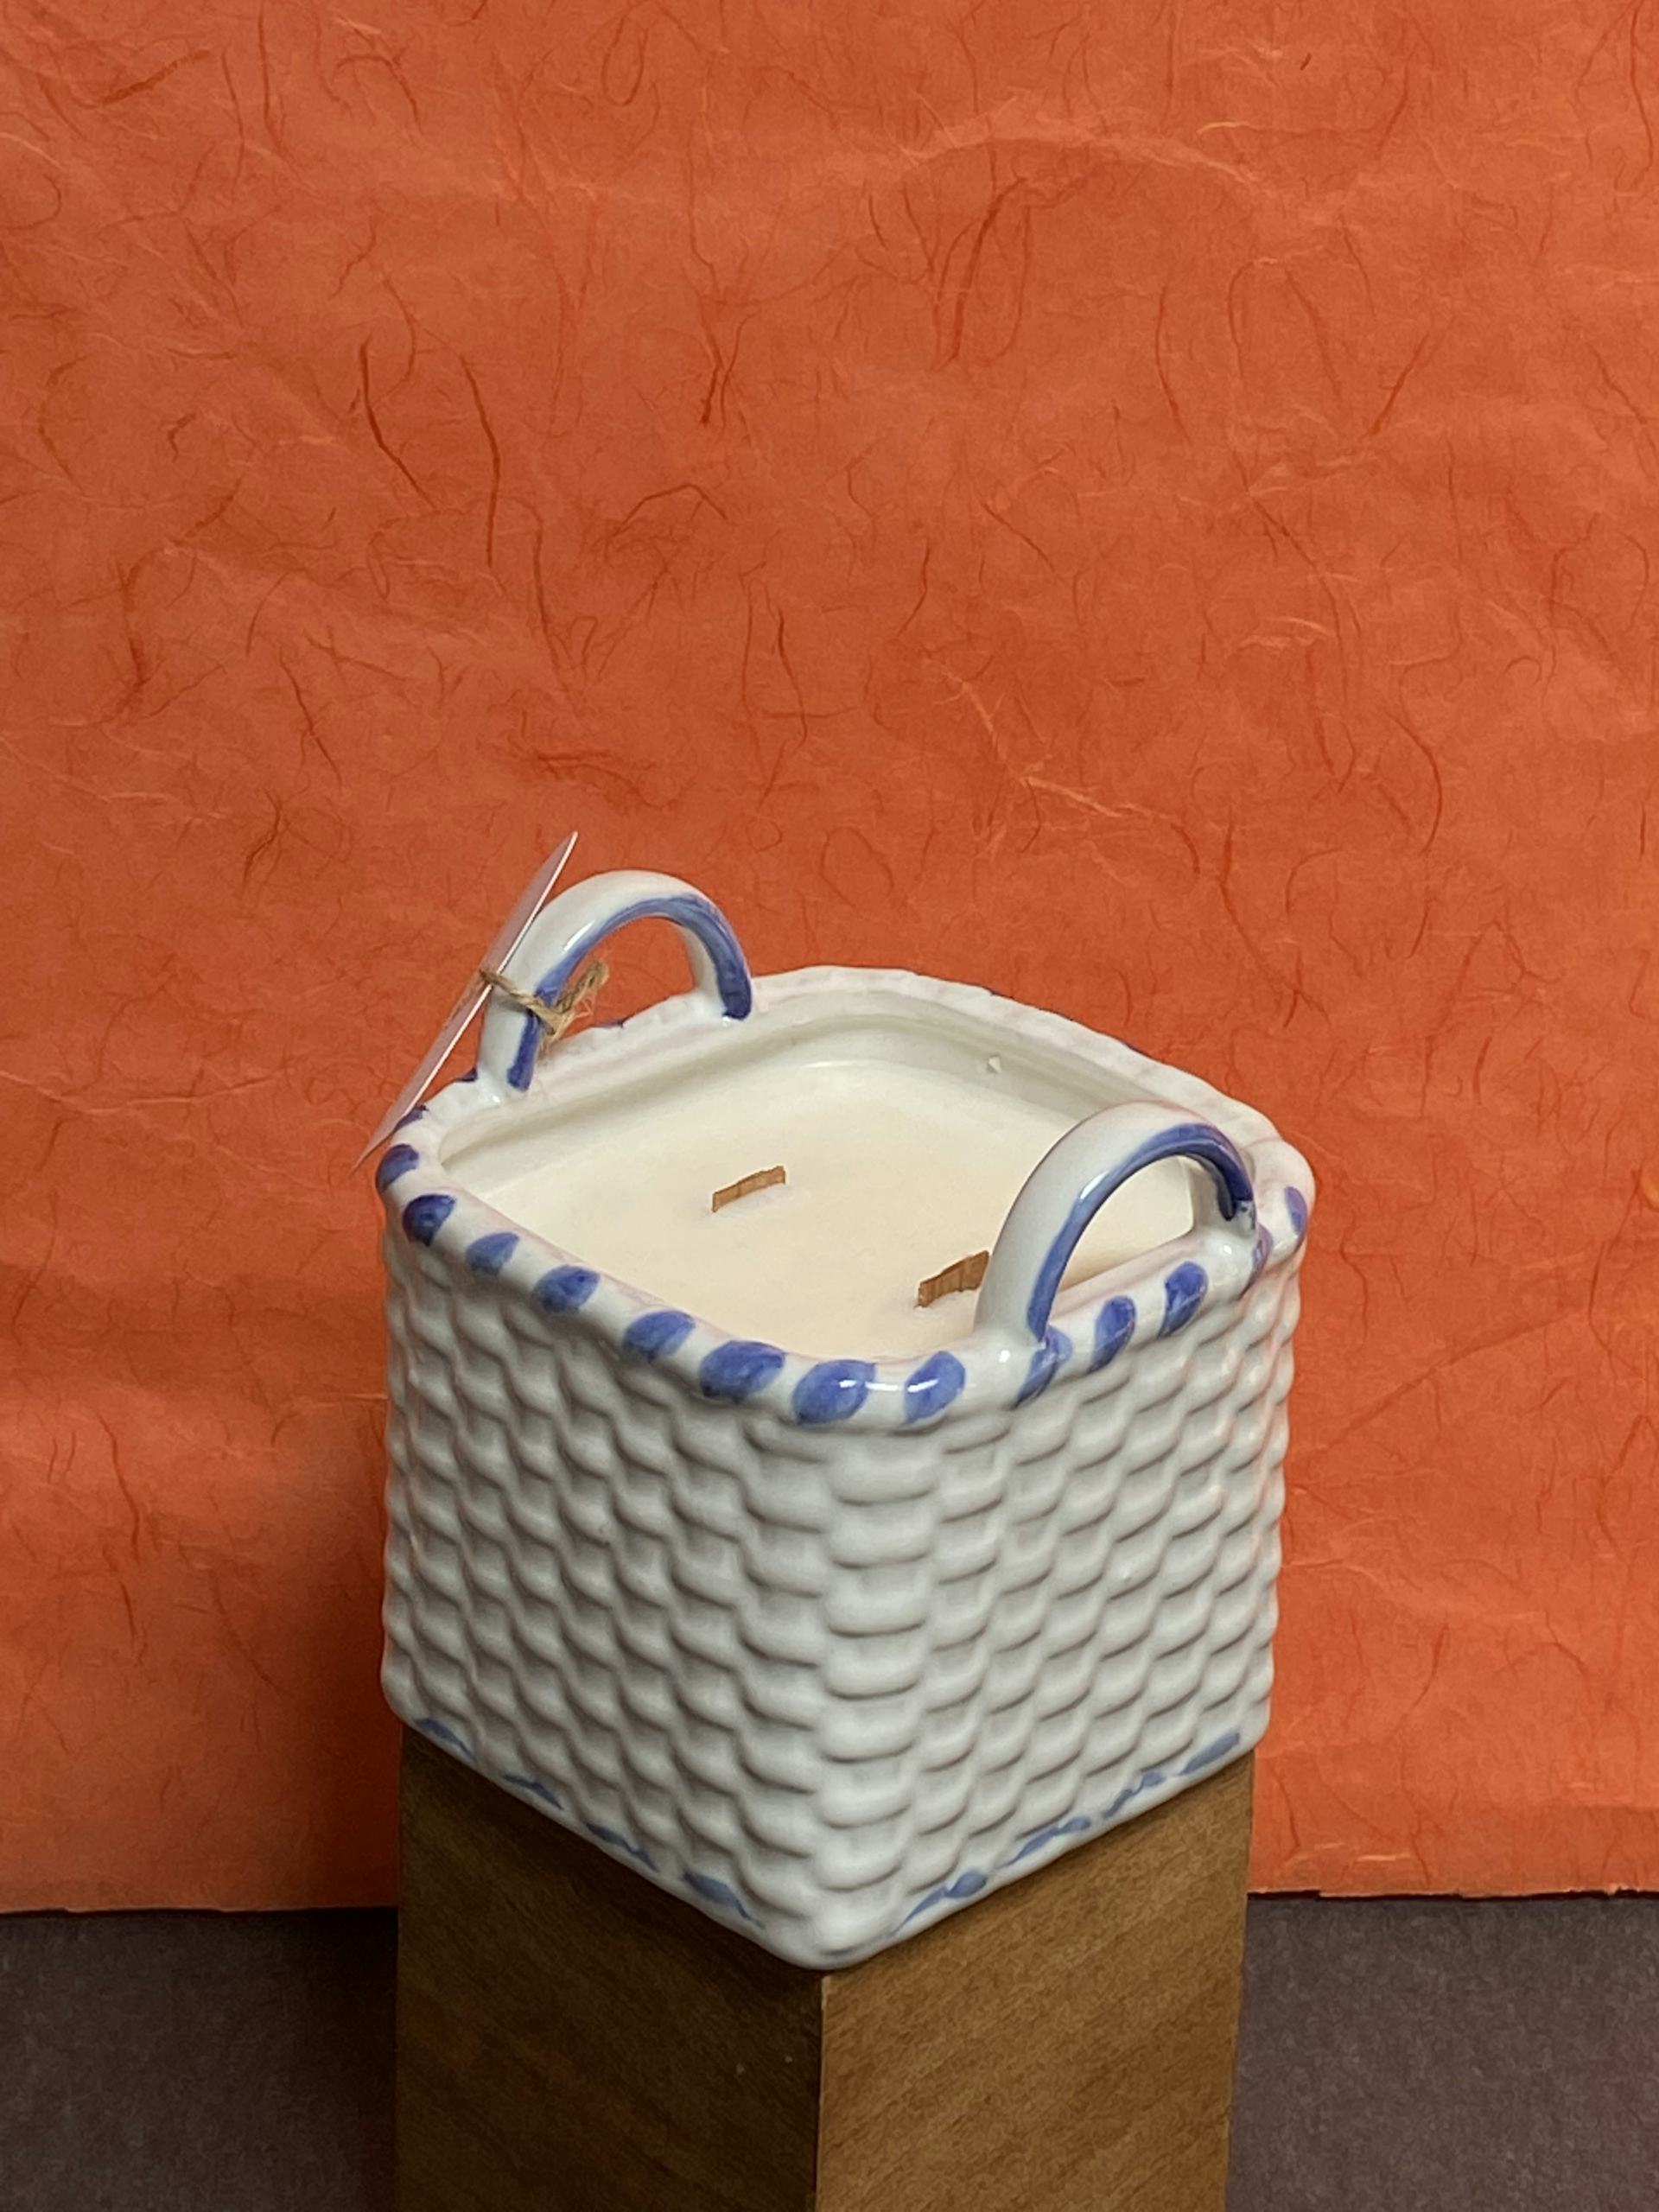 Product Image: Seasonal Spring Candle - Large